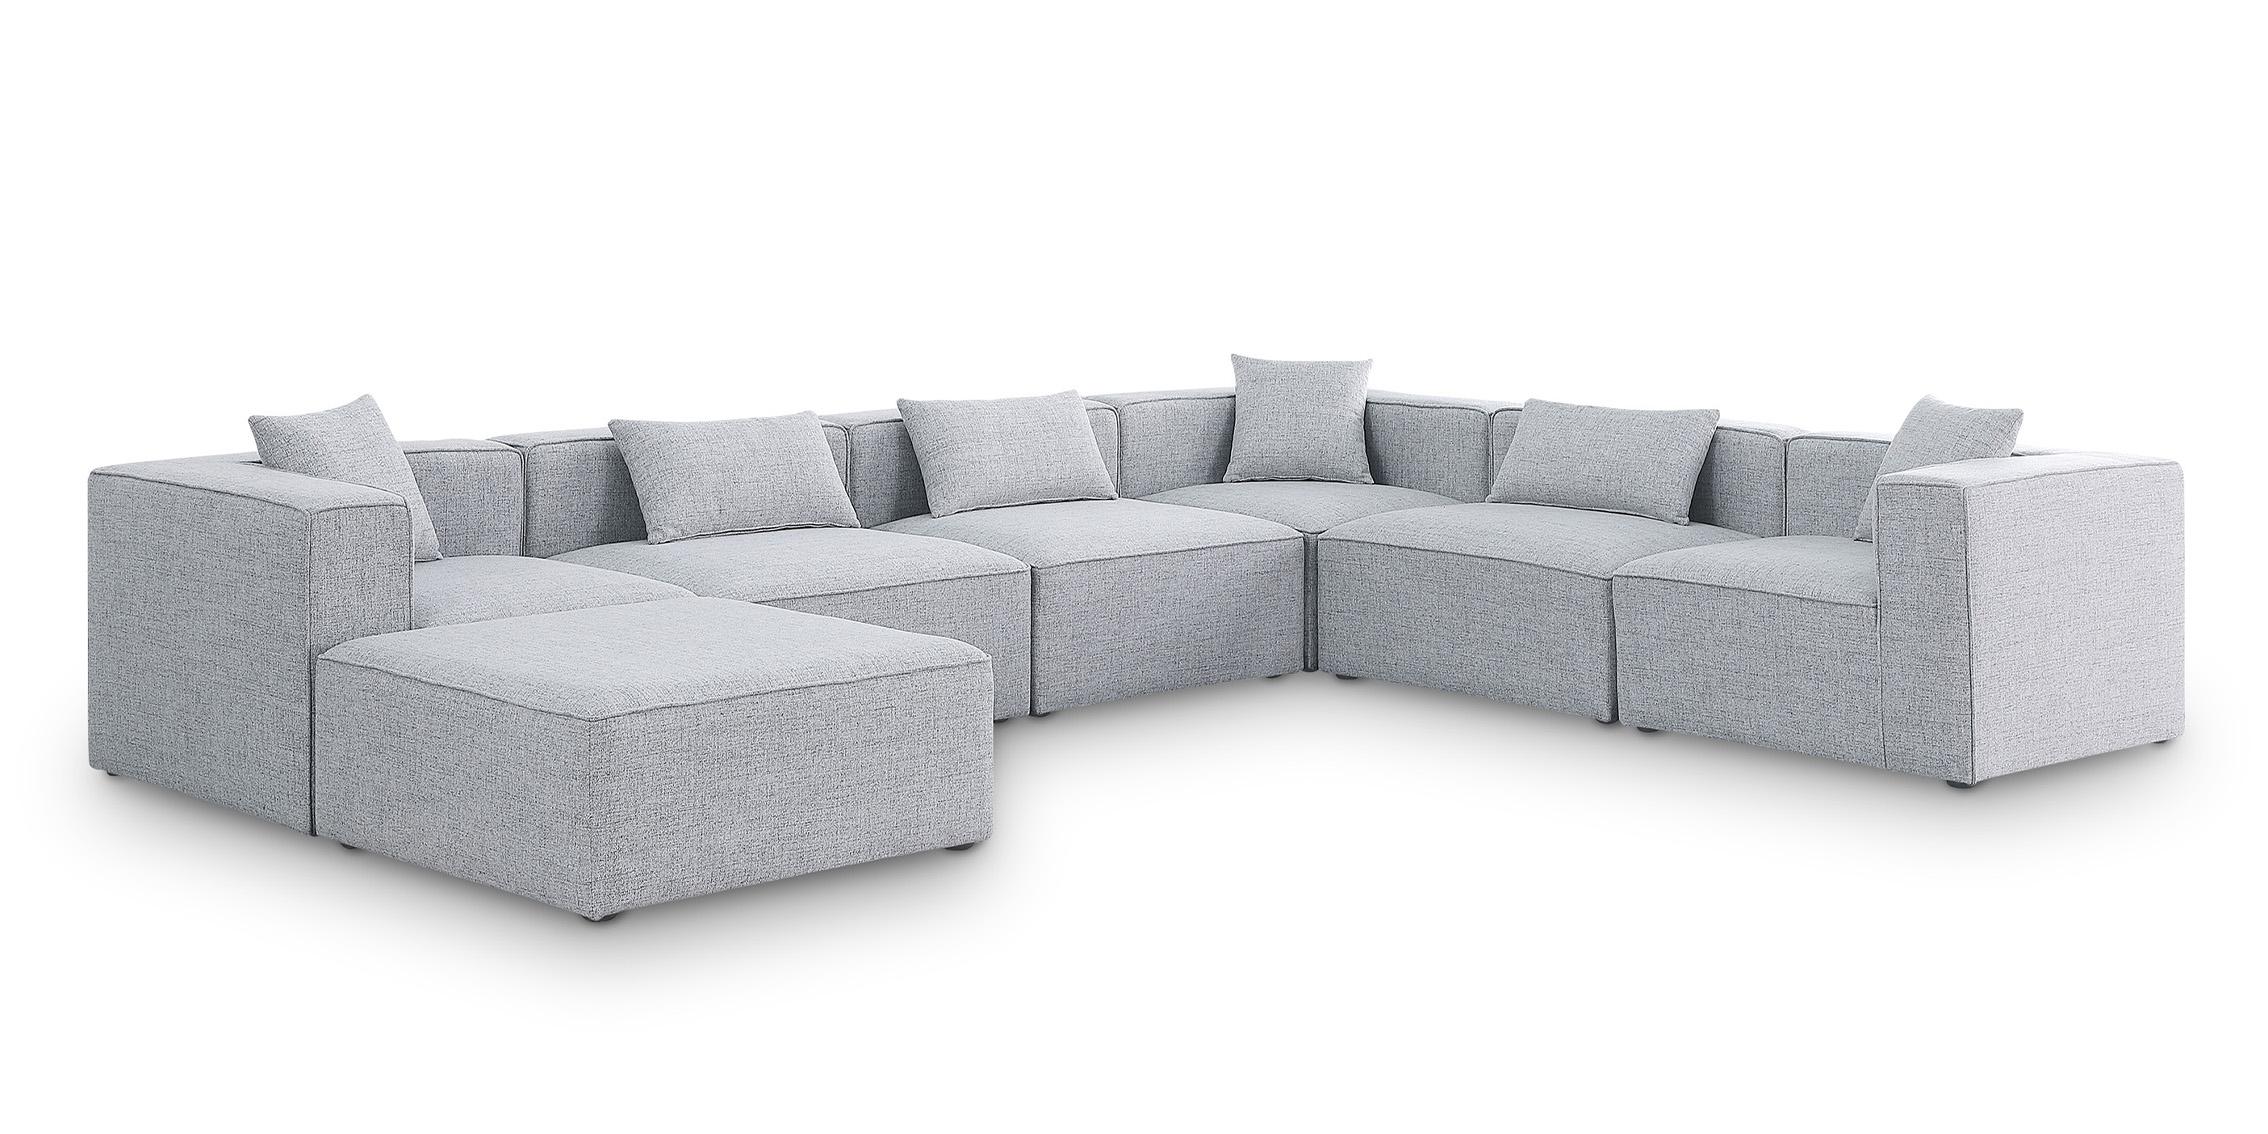 Contemporary, Modern Modular Sectional Sofa CUBE 630Grey-Sec7A 630Grey-Sec7A in Gray Linen